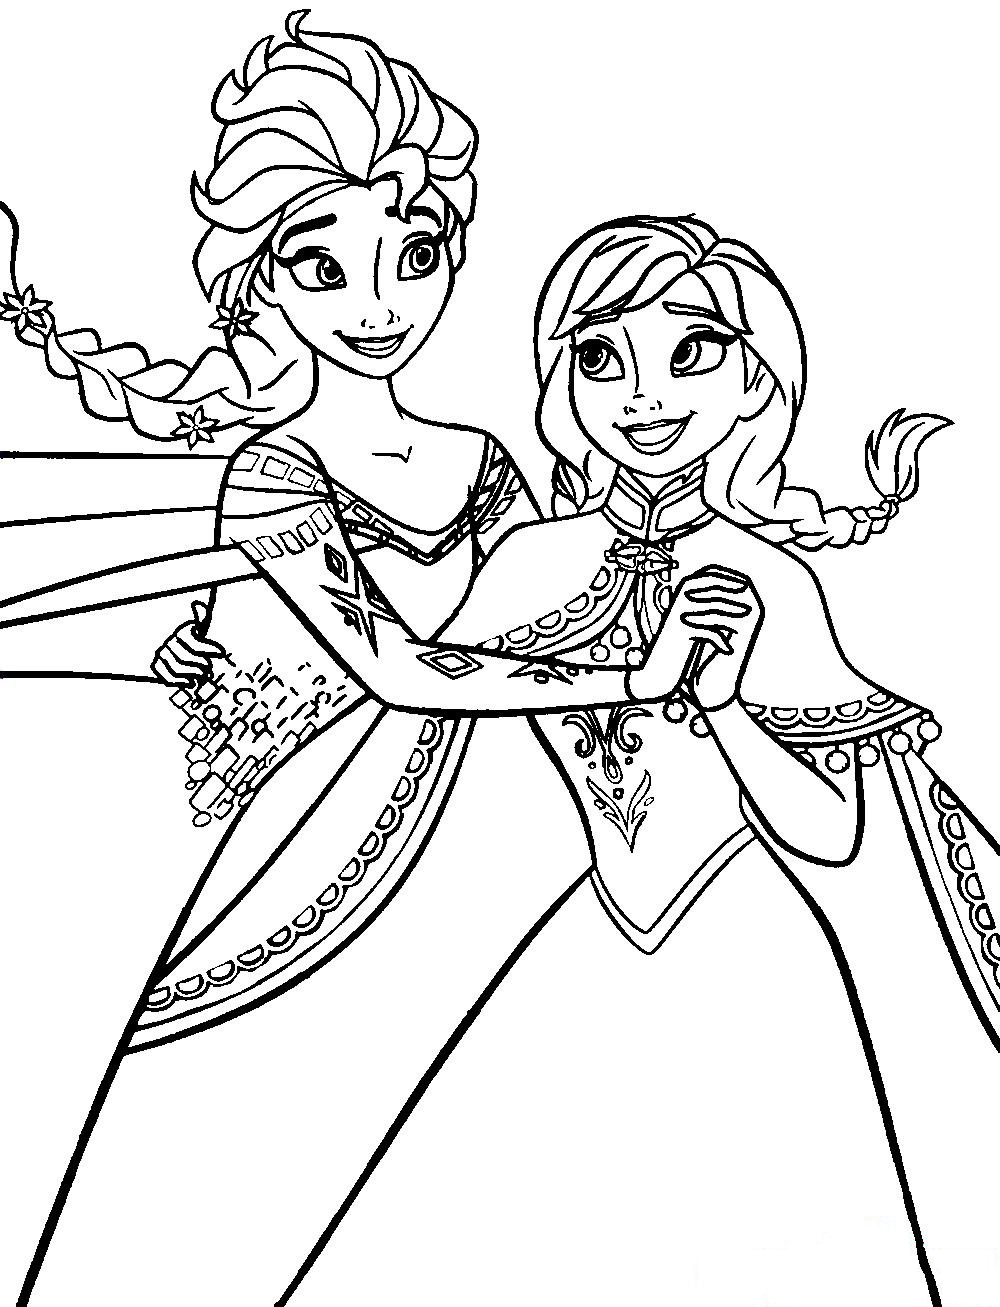 Tranh tô màu công chúa ELsa và Anna đang khiêu vũ